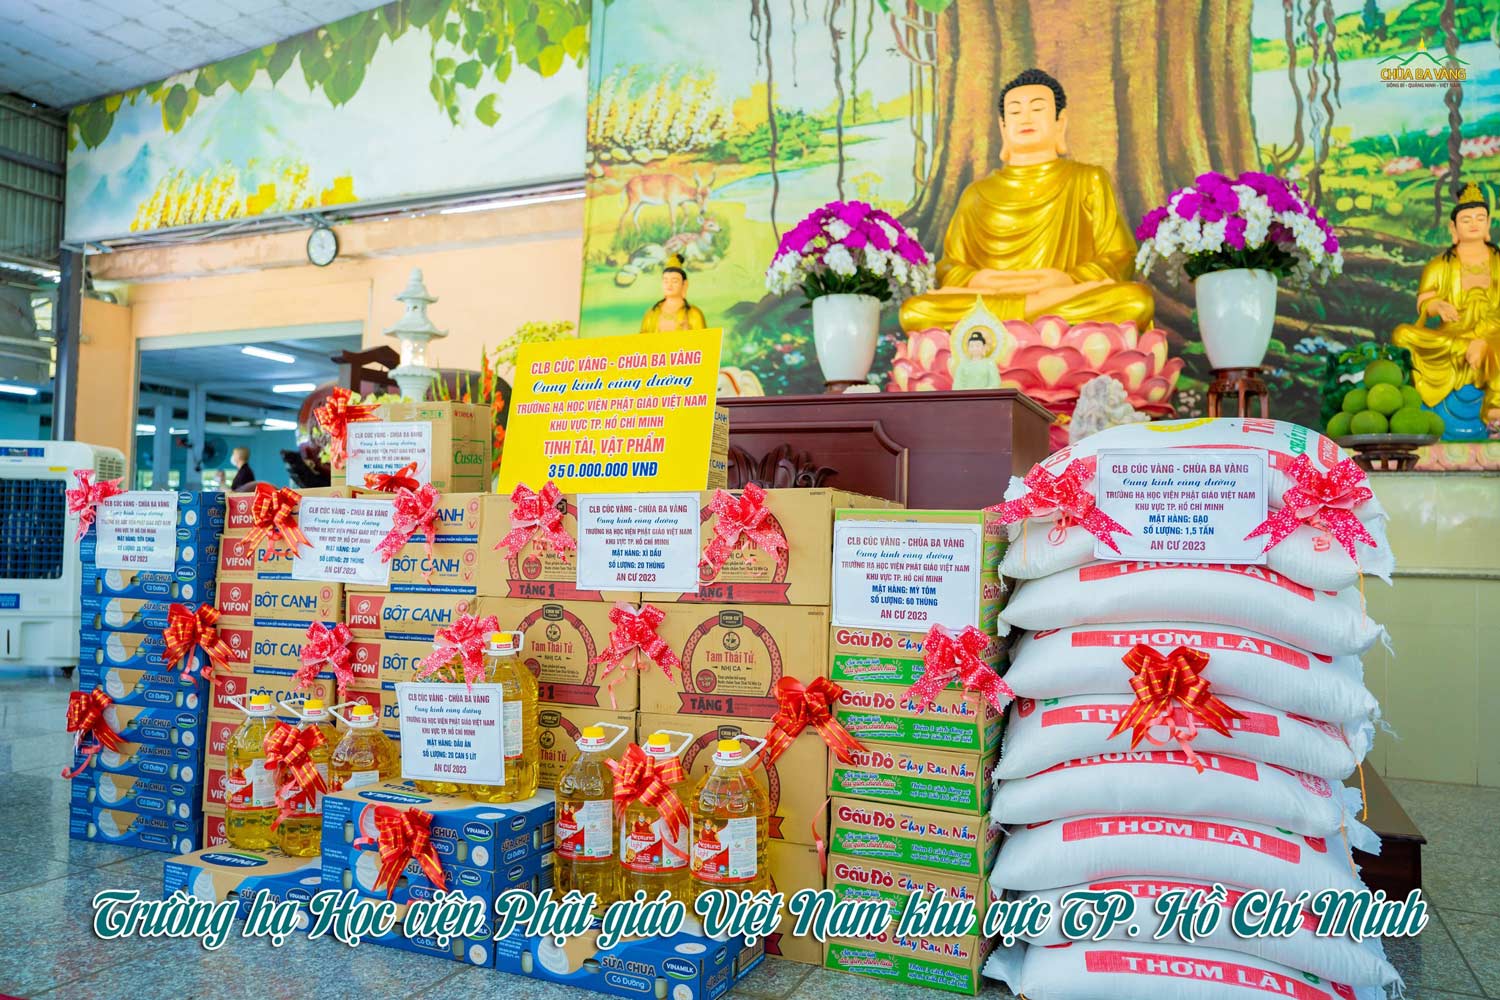 Những tịnh tài, vật phẩm được các Phật tử chuẩn bị dâng cúng dường tại trường hạ Học viện Phật giáo Việt Nam khu vực TP. Hồ Chí Minh